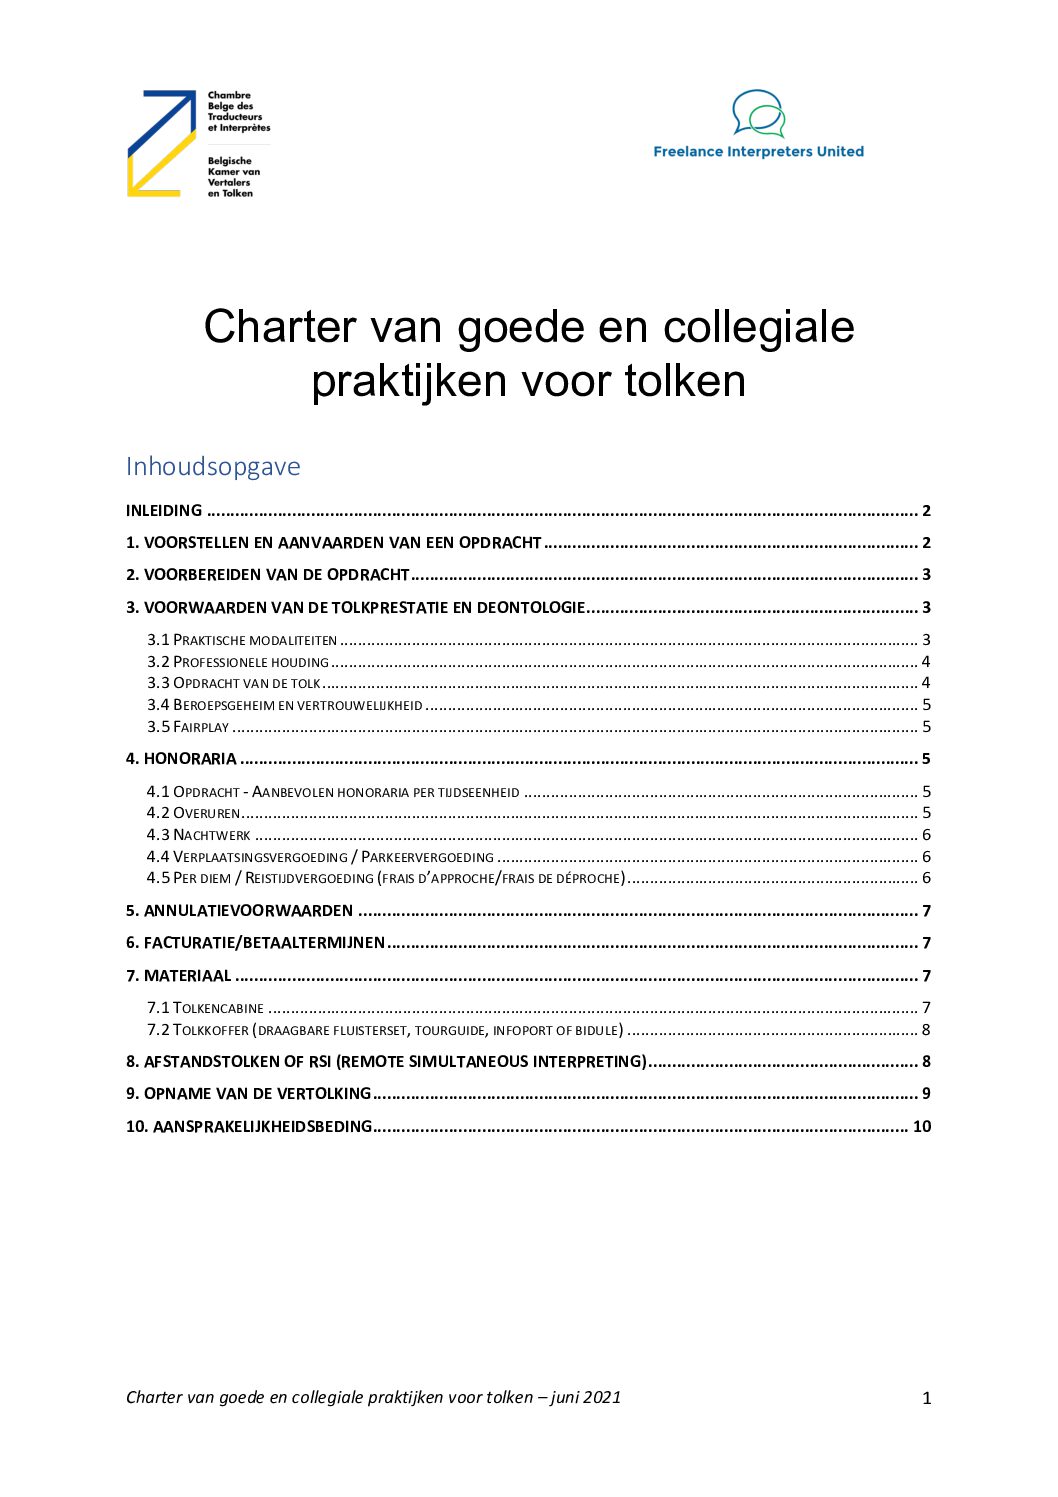 Image de présentation pour le document : Tolken – Charter goede en collegiale praktijken